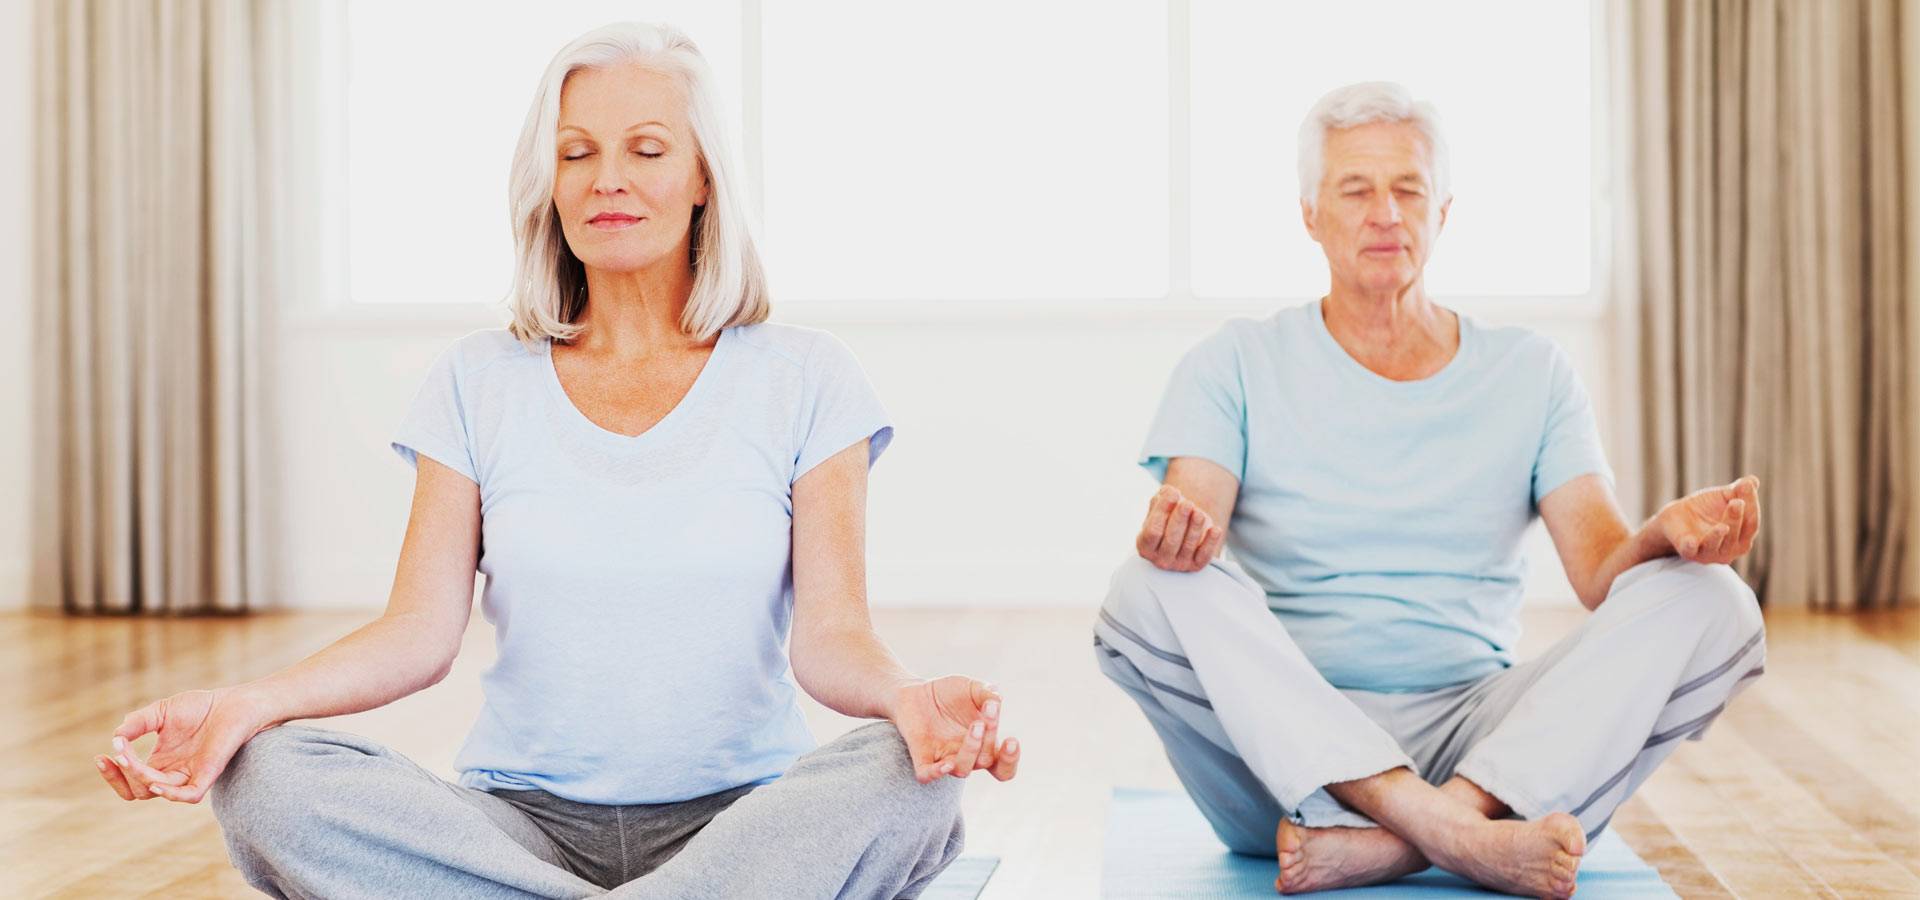 Йога для пожилых людей: комплекс упражнений, рекомендации, видео